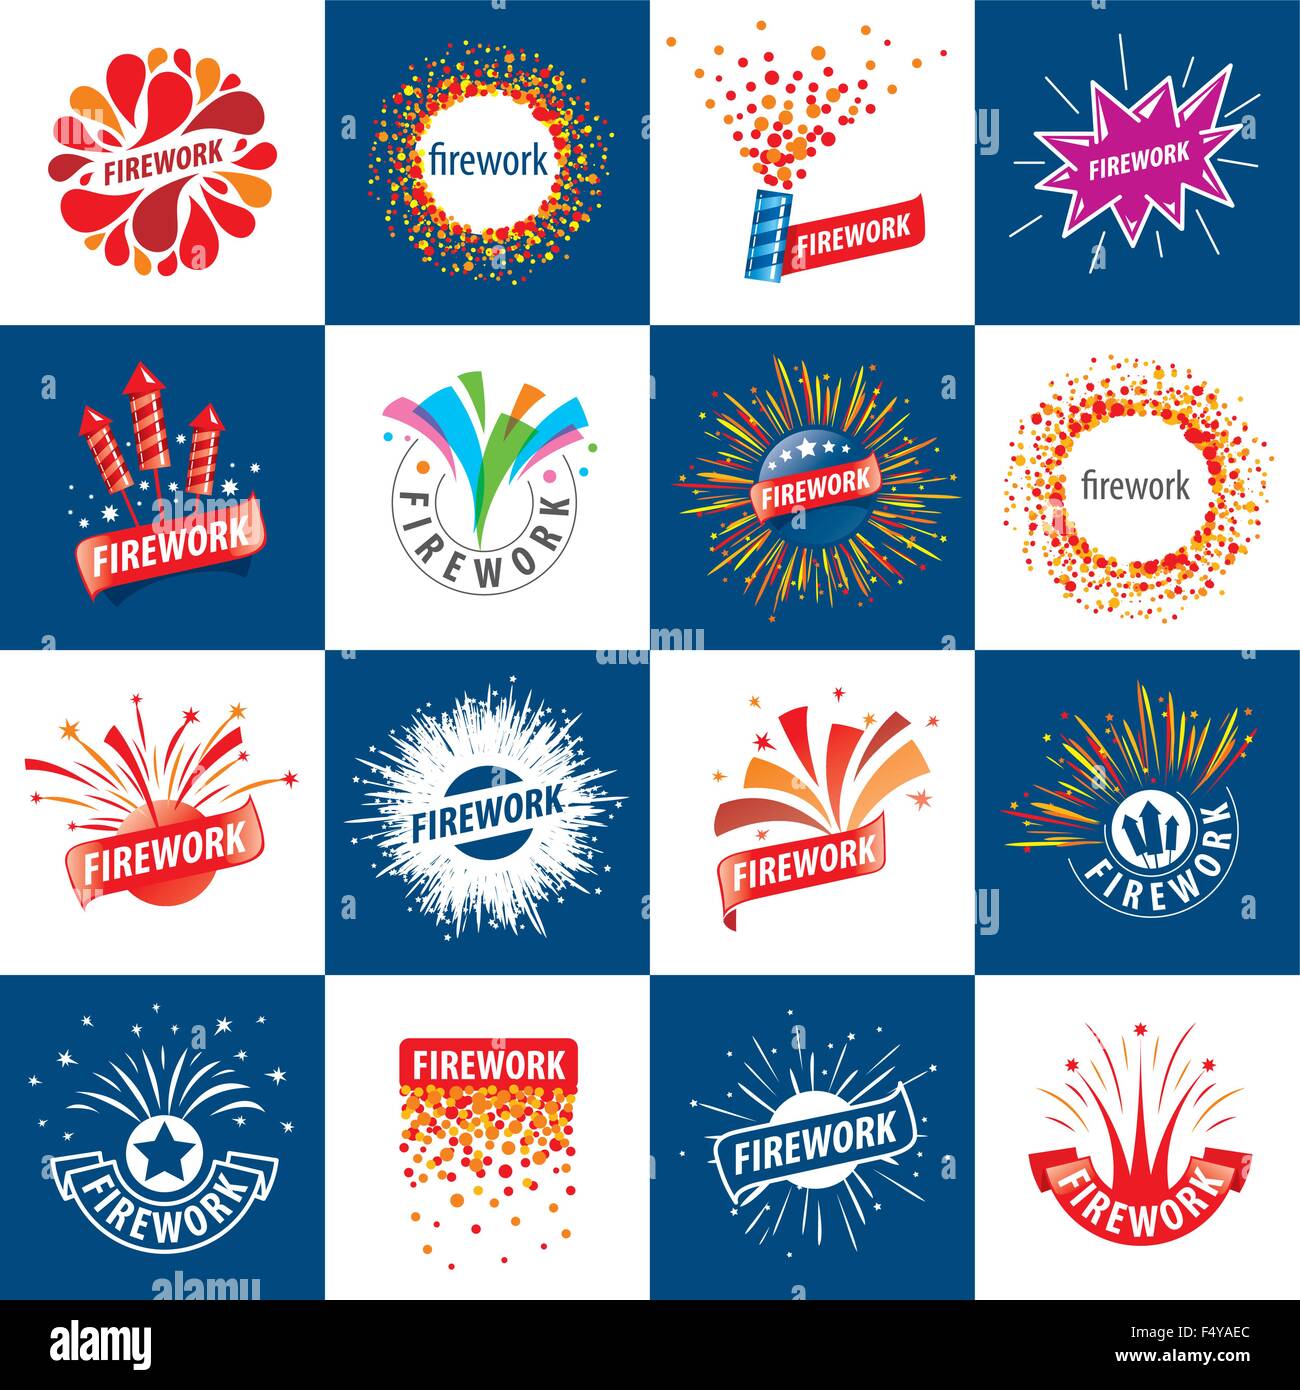 Set Of Vector Logos For Fireworks Stock Vector Art Illustration